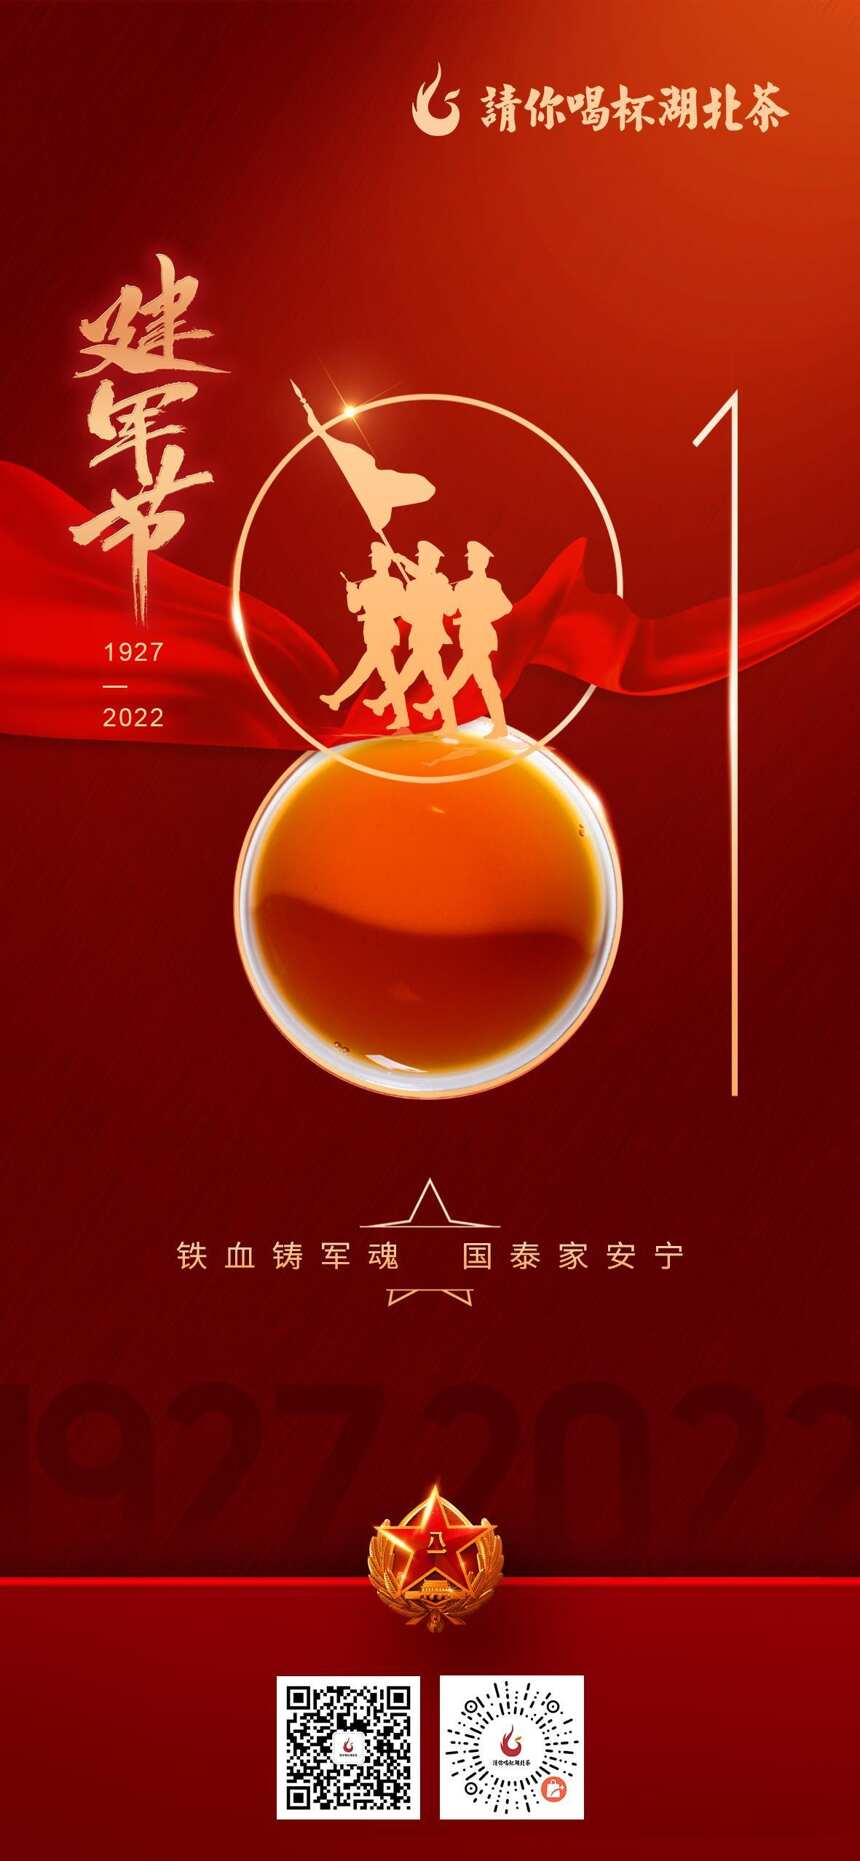 「“鄂的茶”湖北茶礼」热烈庆祝中国人民解放军建军95周年